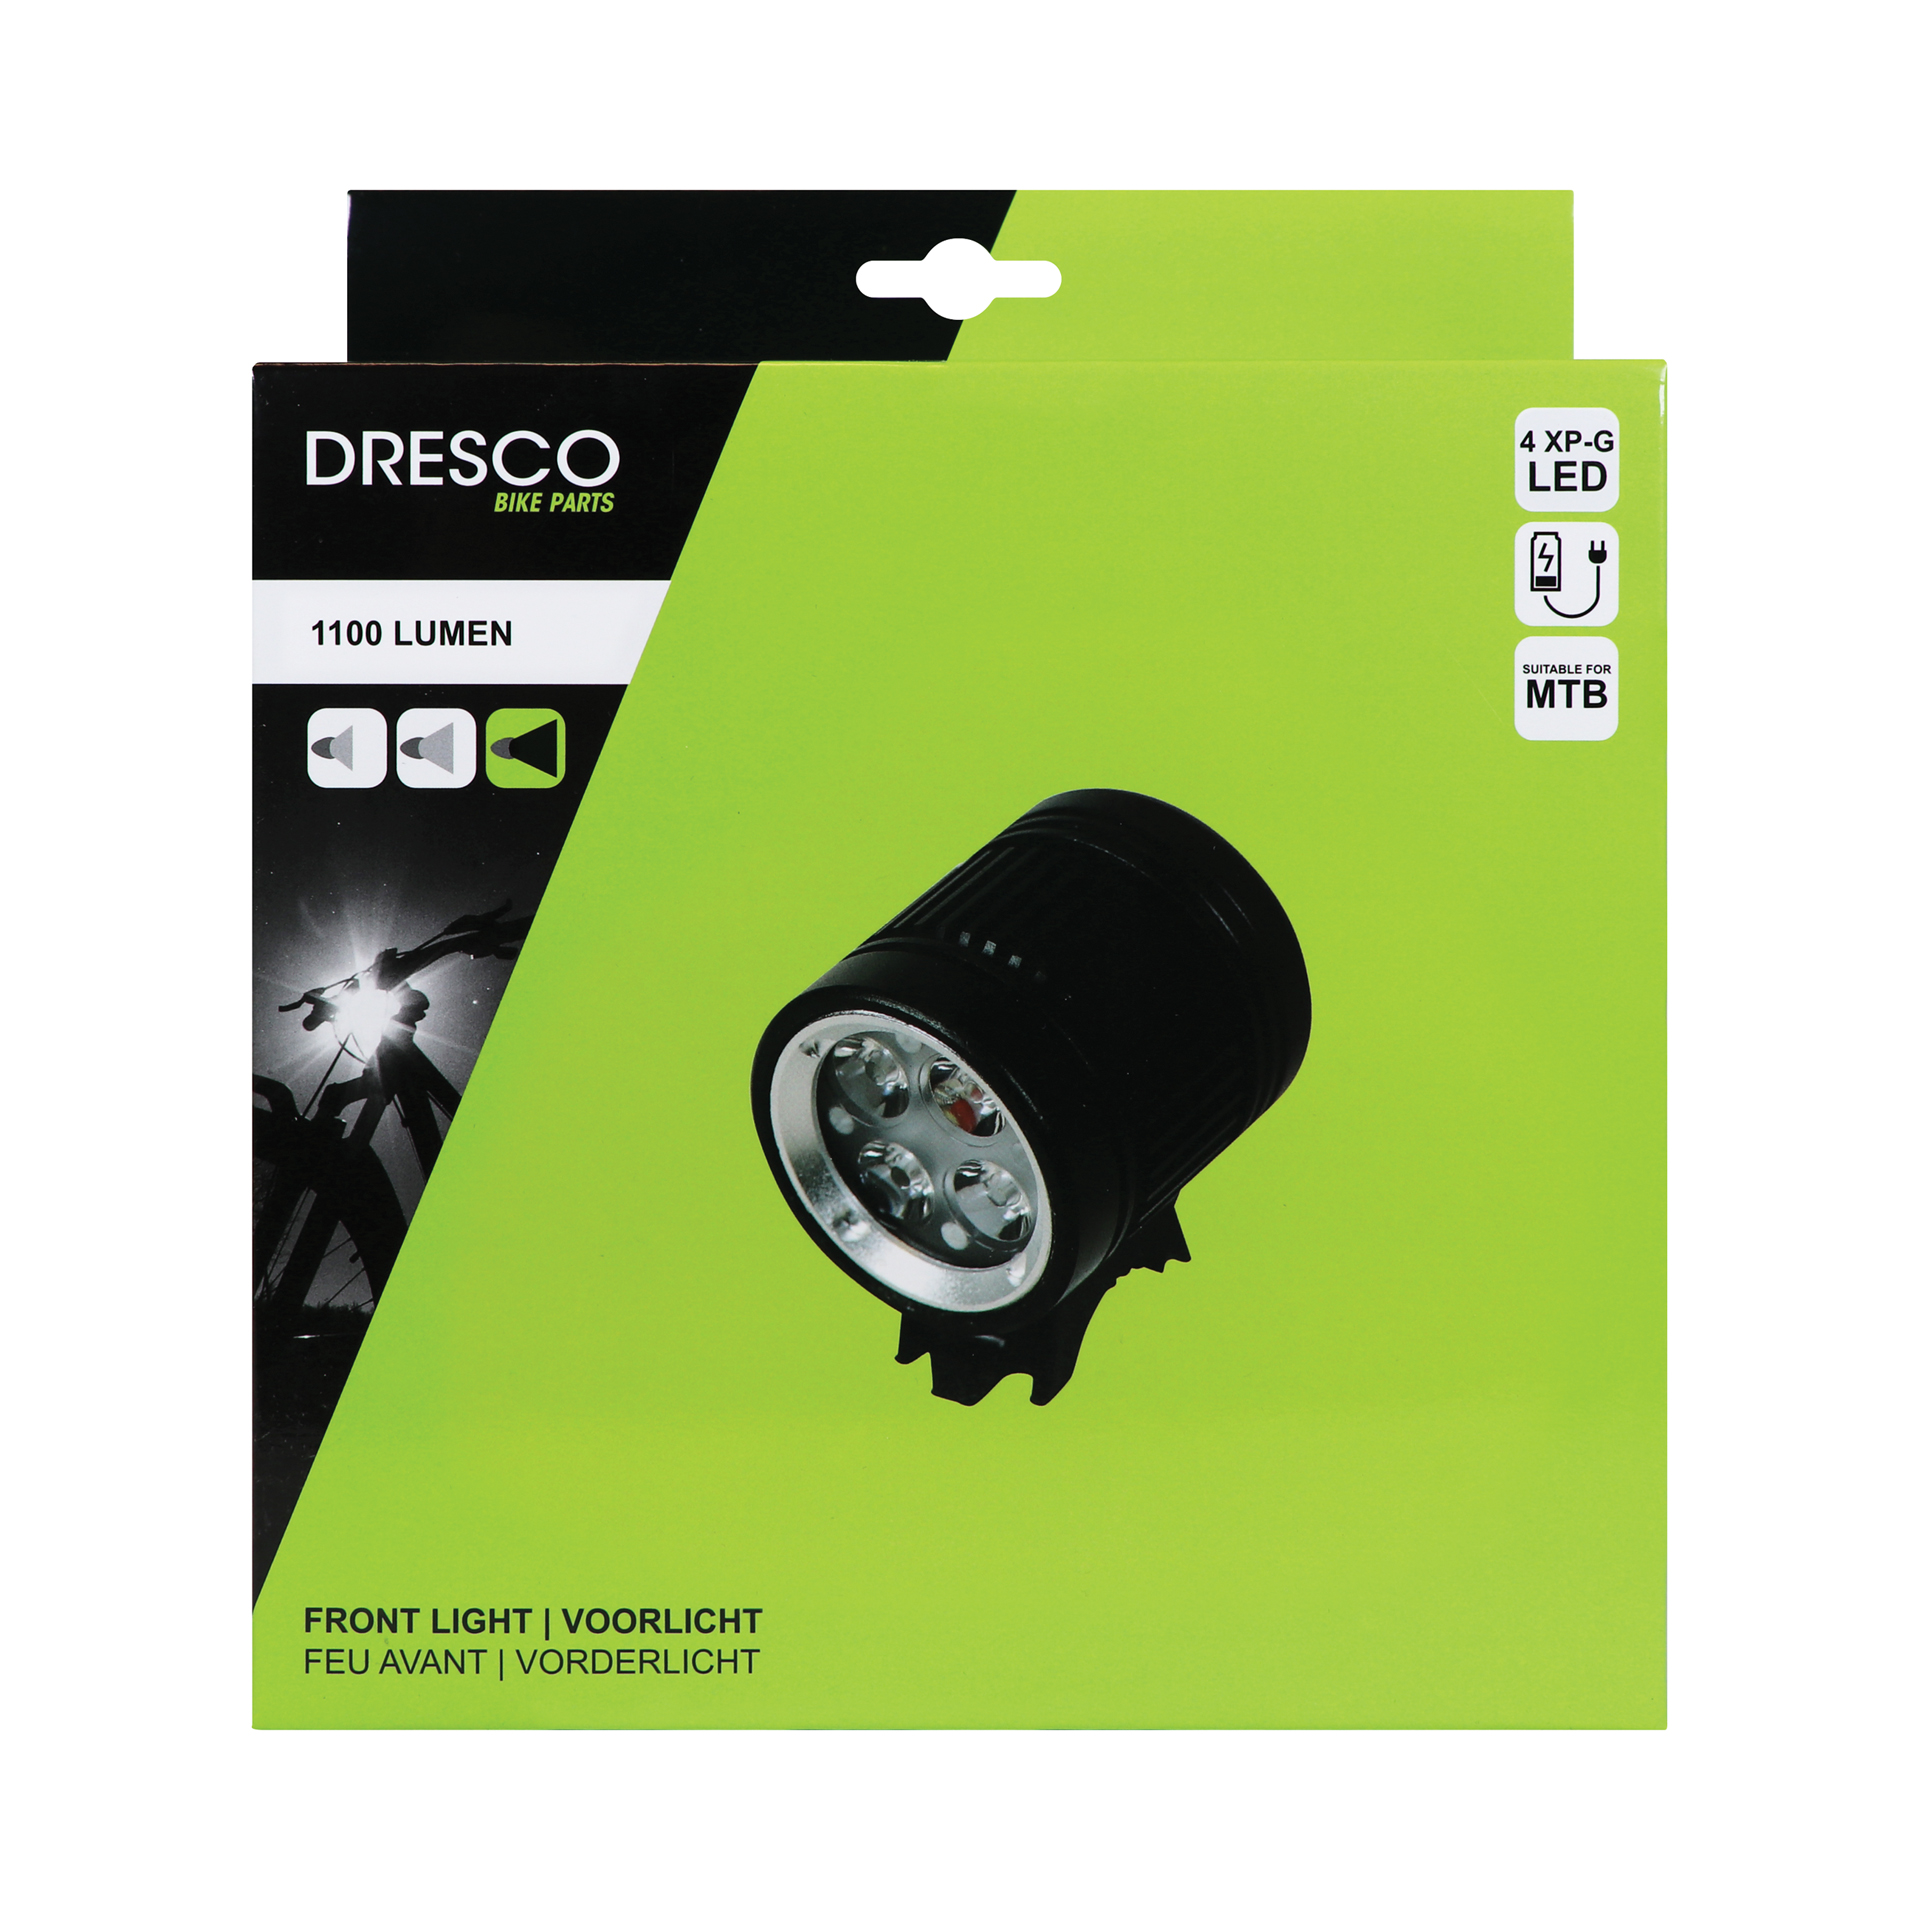 Dresco XP-G LED Koplamp met Accupack 1100 Lumen (5251014)